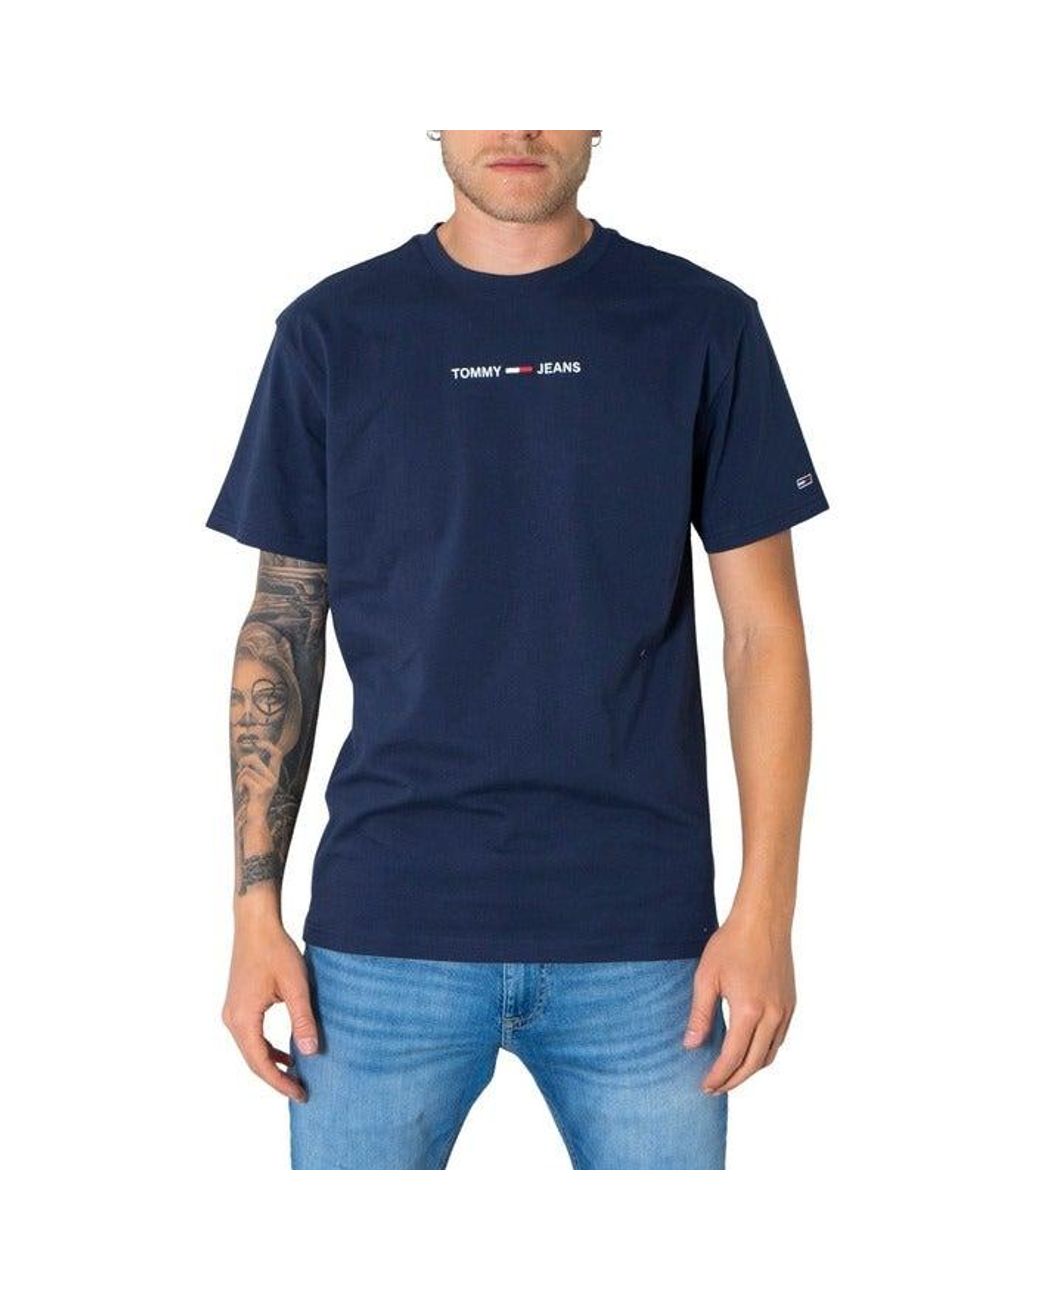 TOMMY JEANS T-shirt Uomo DM0DM07843 Blu 